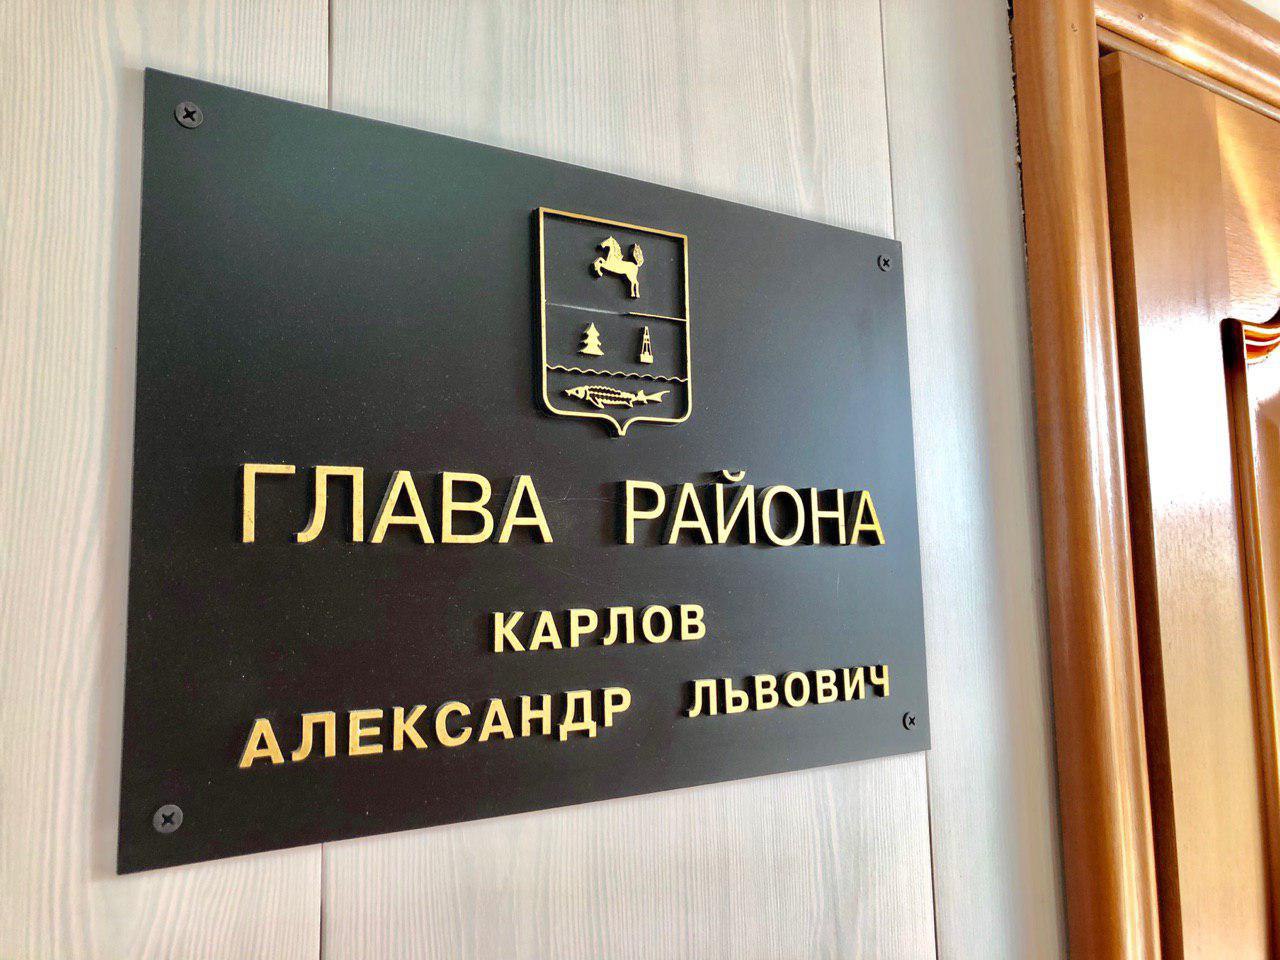 Сегодня в администрации района прошло очередное аппаратное совещание под руководством и.о. главы района Александра Костарева.